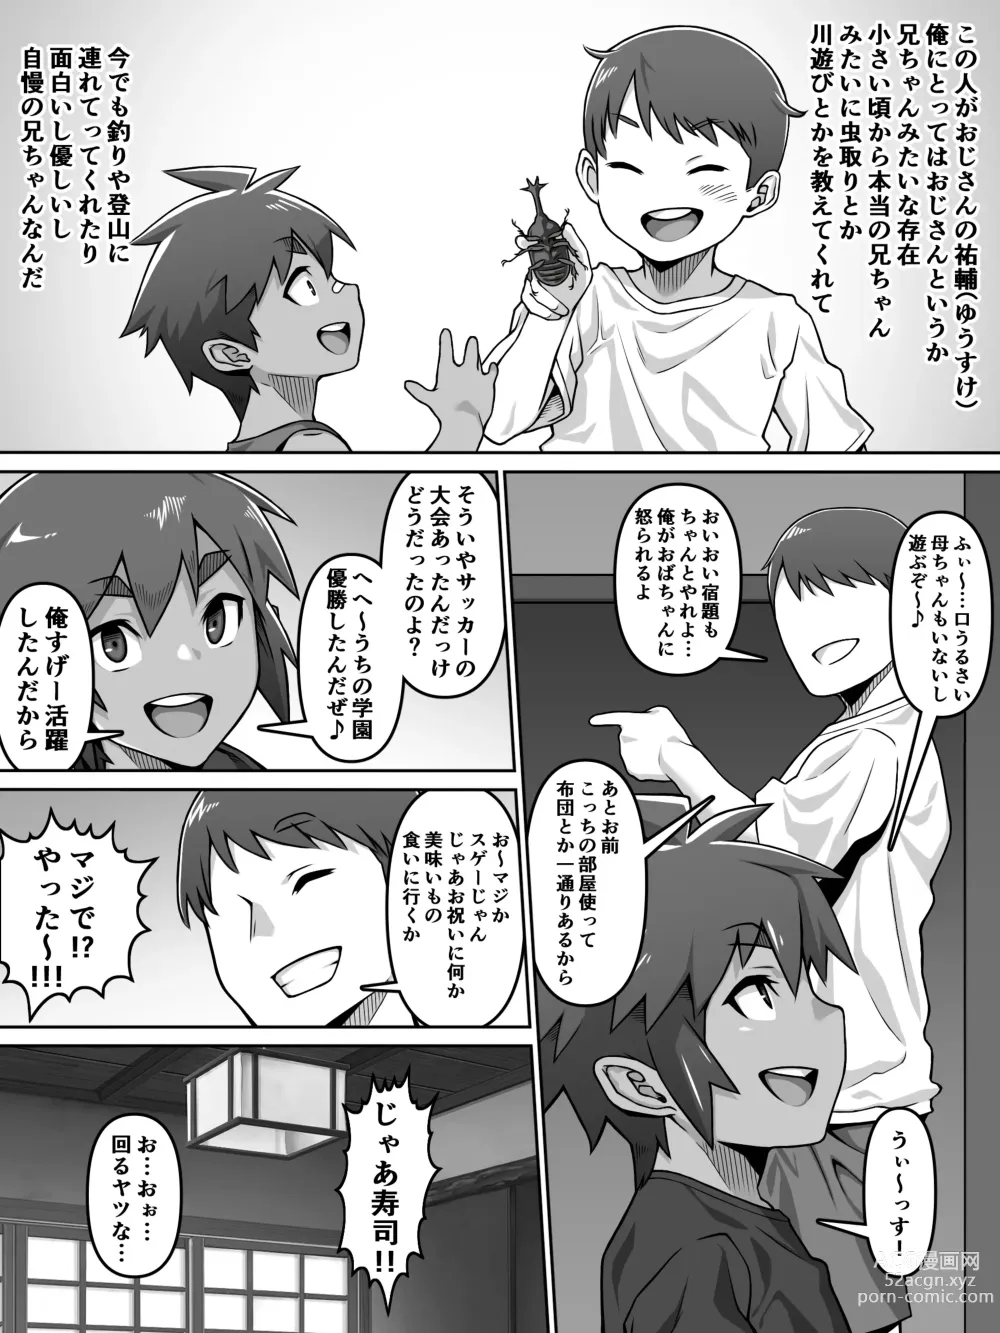 Page 5 of doujinshi Oi Ai